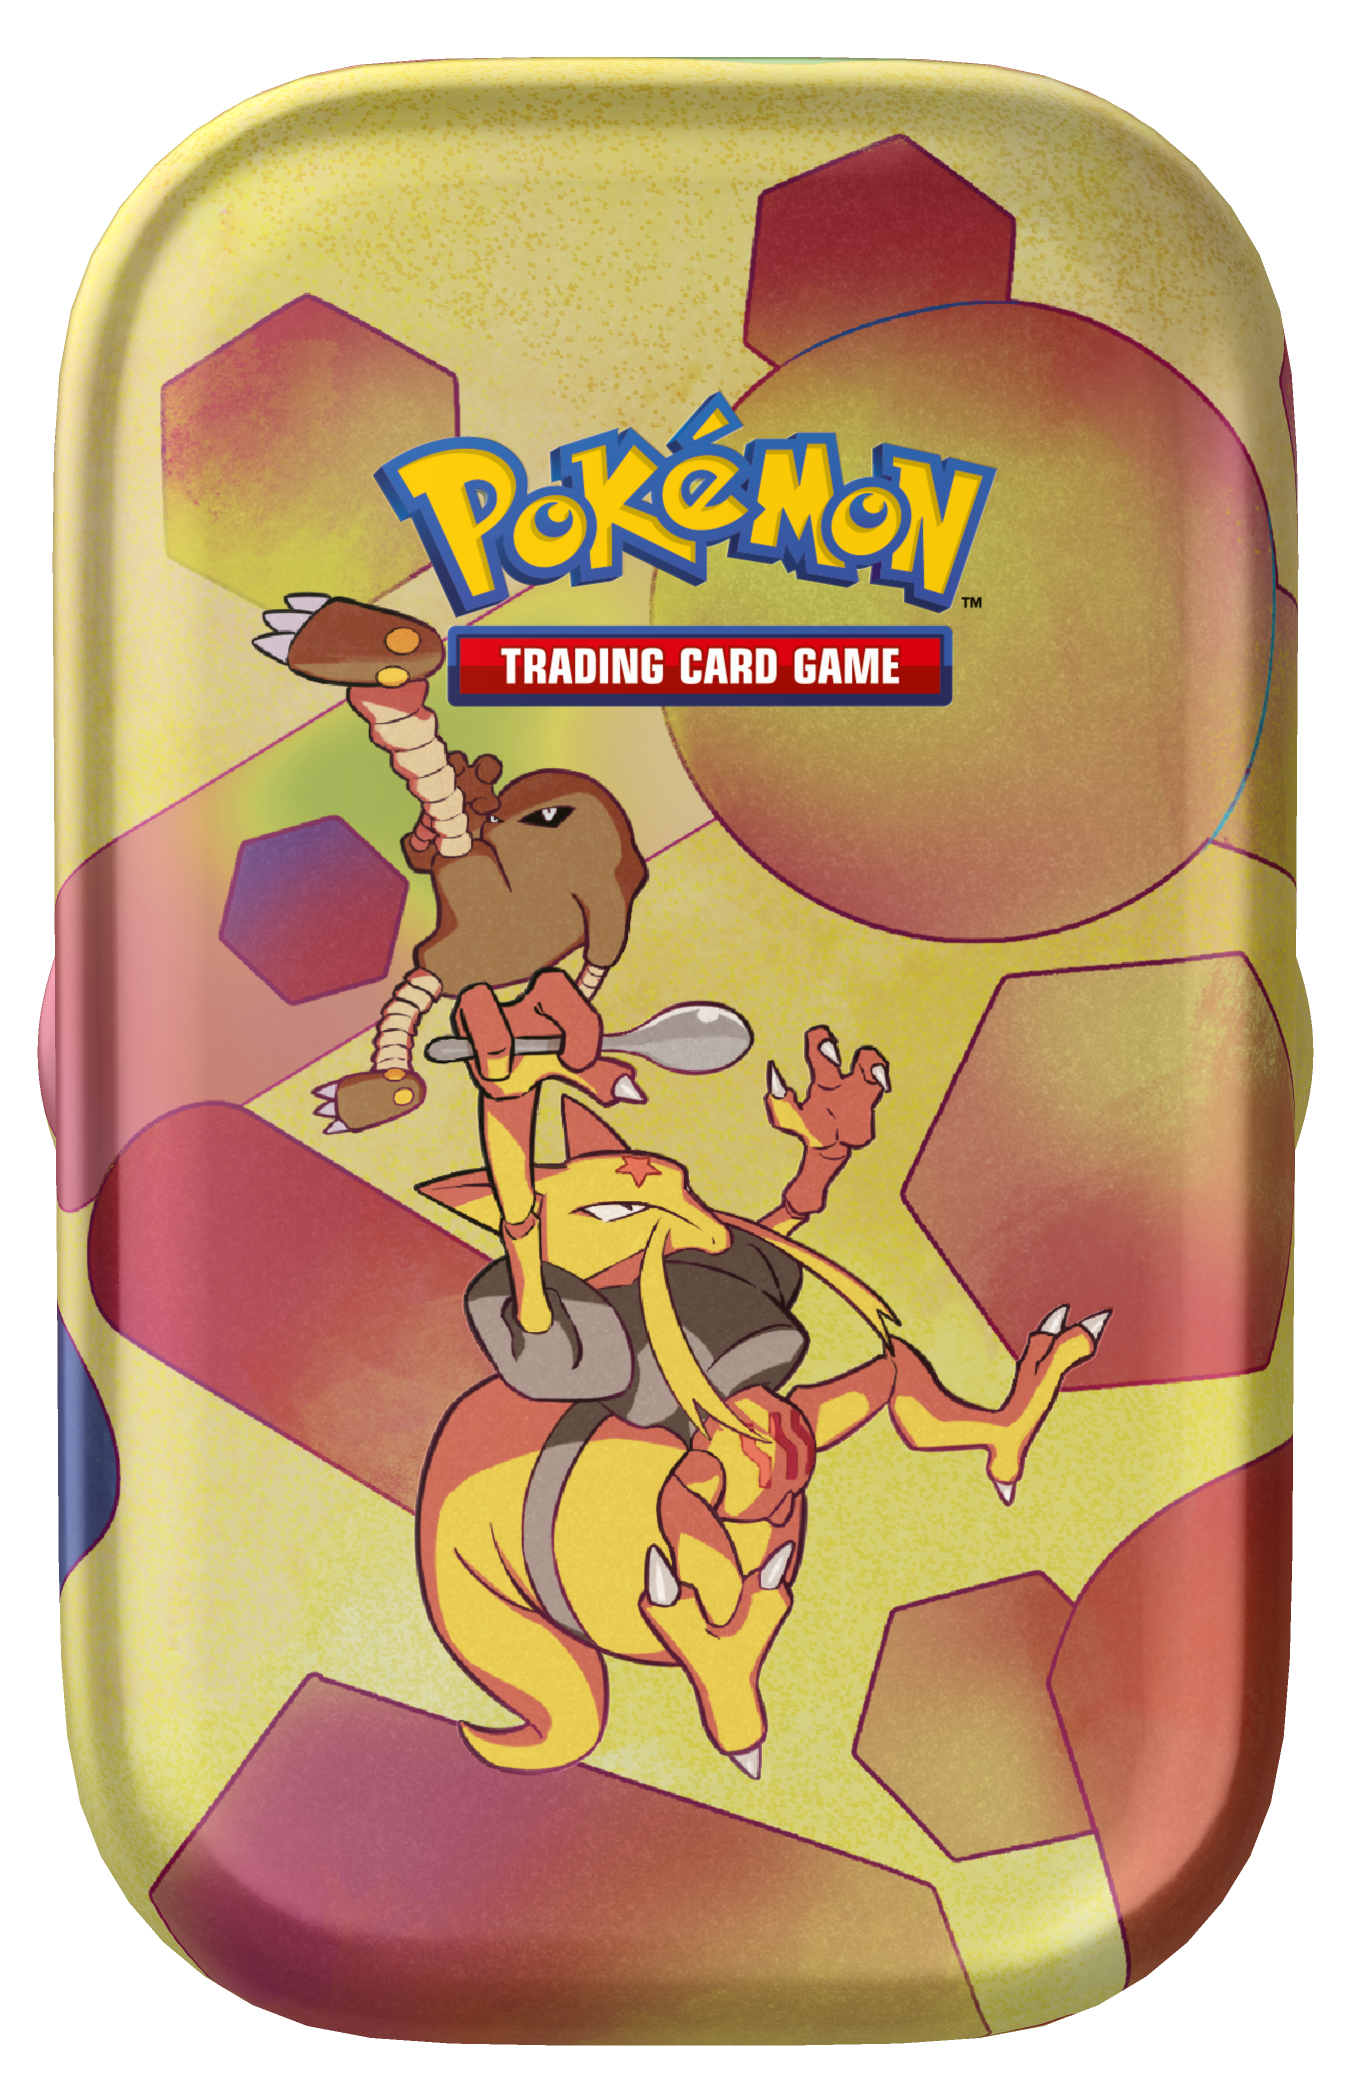 Electhor - Carte Pokémon SVPFR049 Ecarlate et Violet 151 E&V 3.5